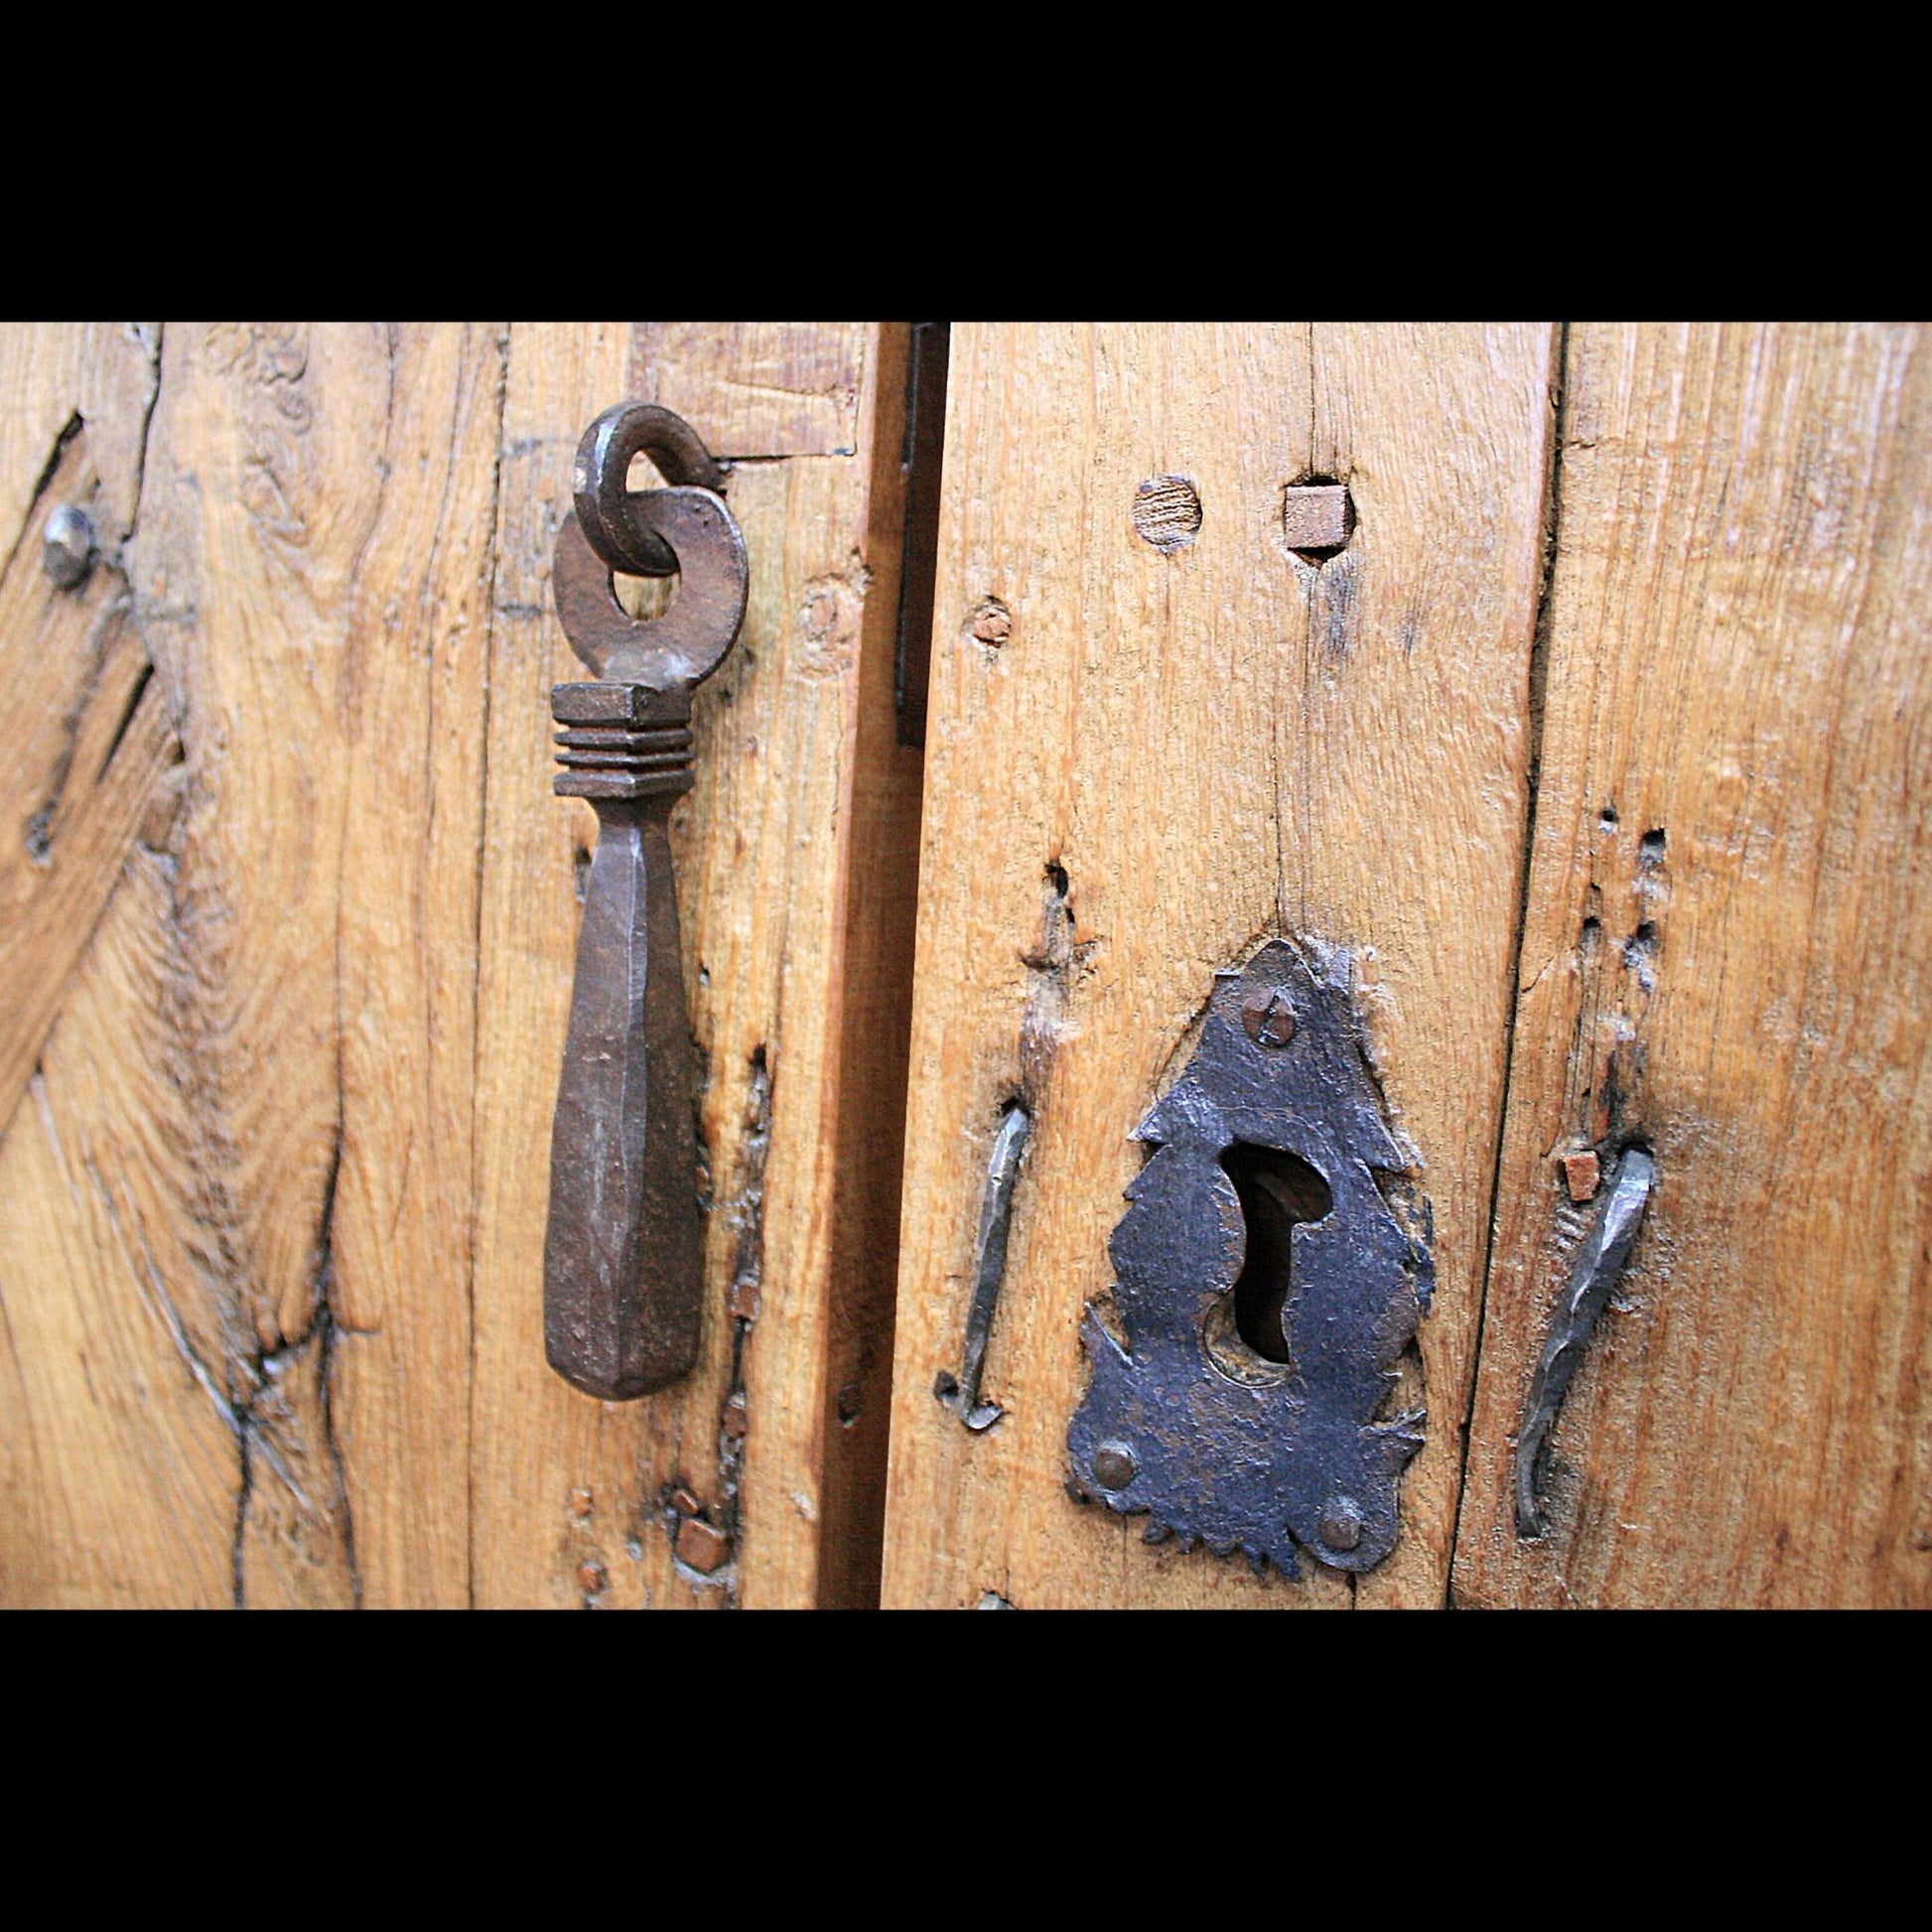 old-key-hole-and-hardware-v-isenhower-photography - V. Isenhower Photography